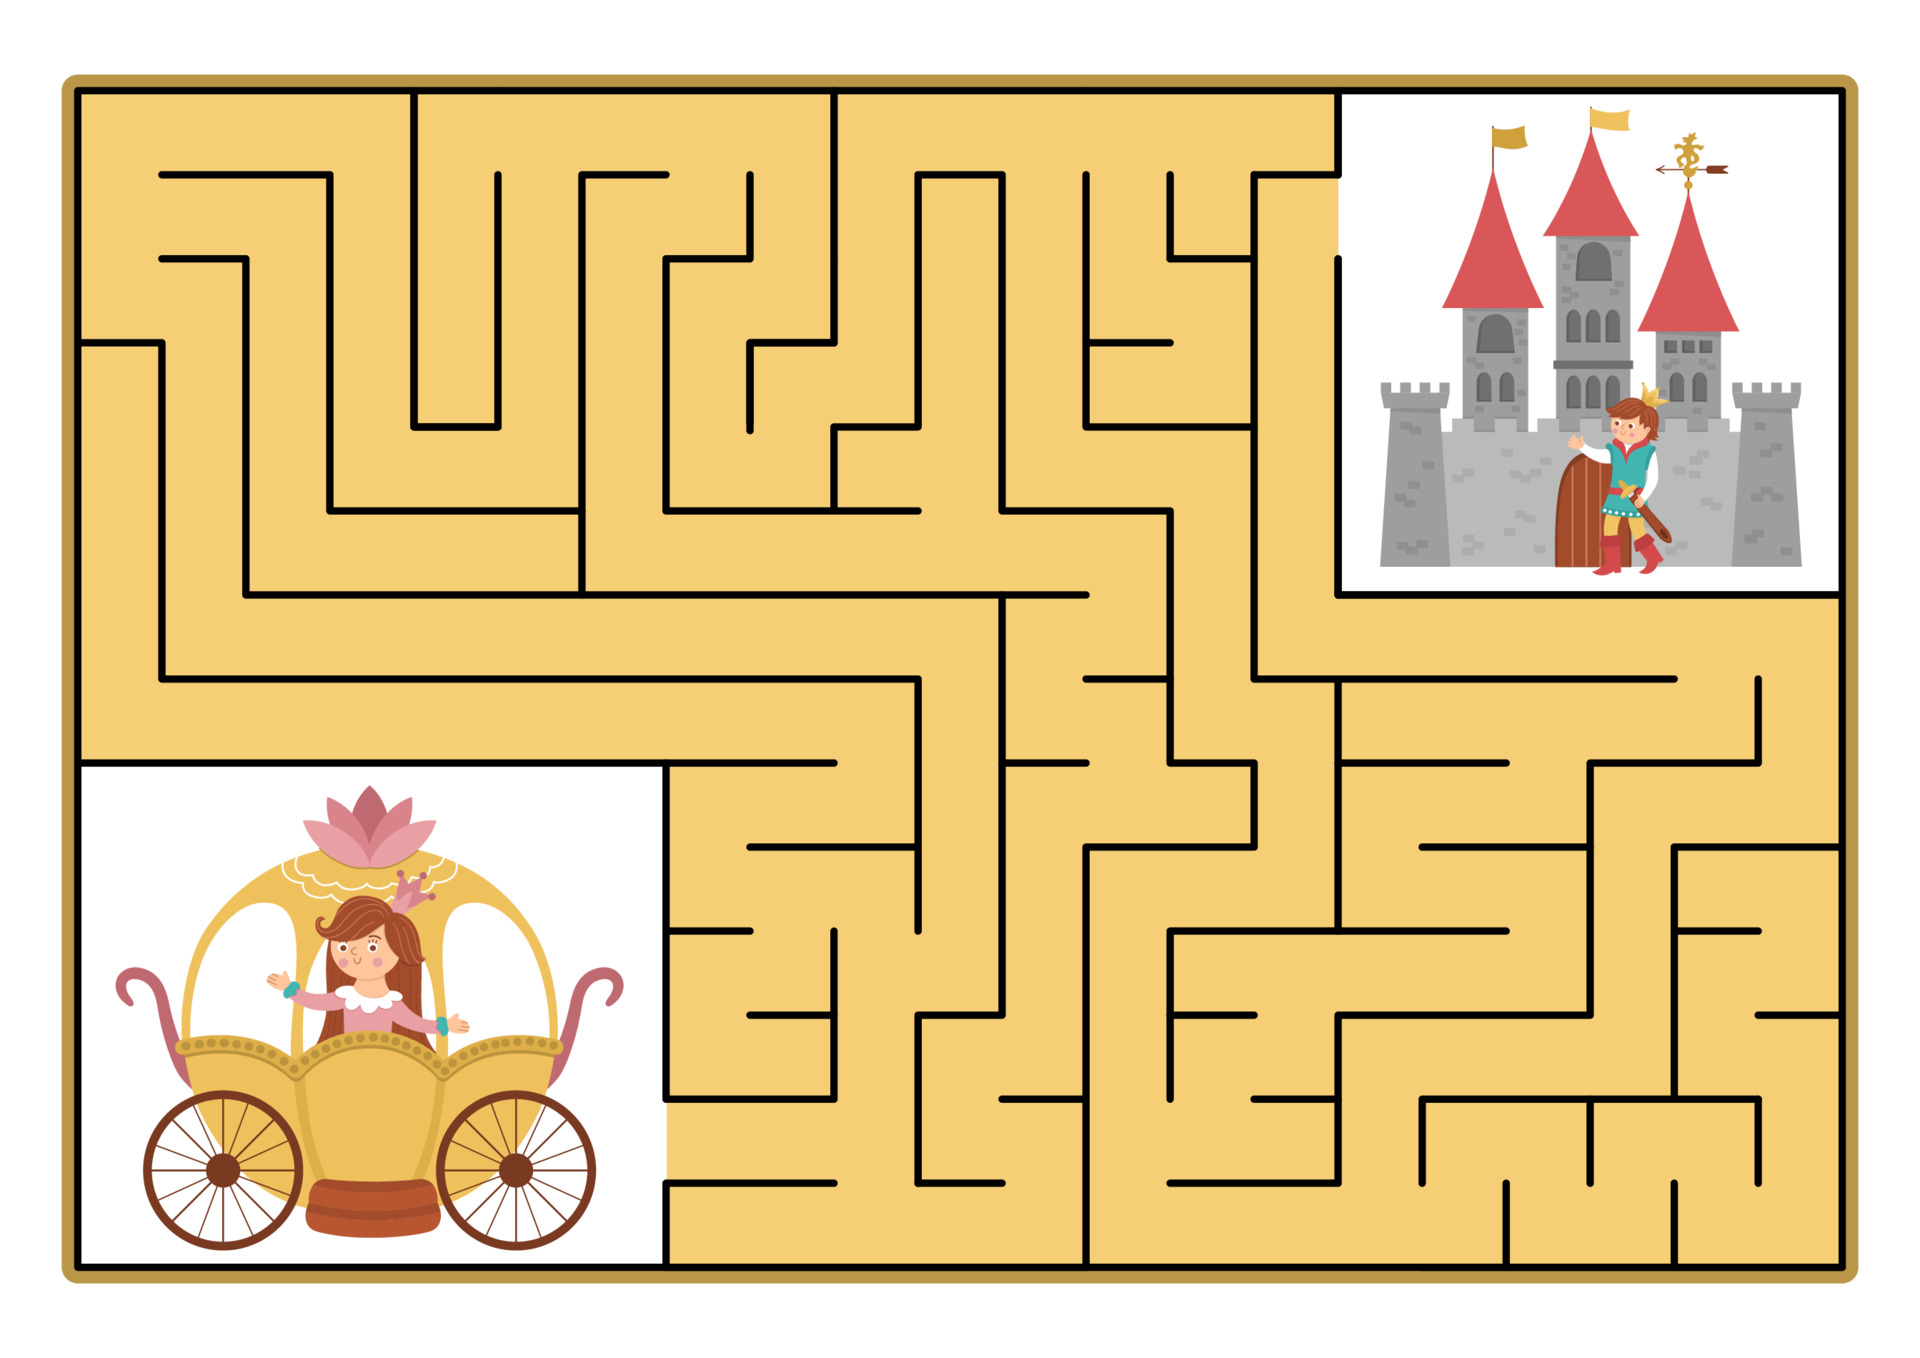 Labirinto estrada ou caminho do príncipe para a princesa através